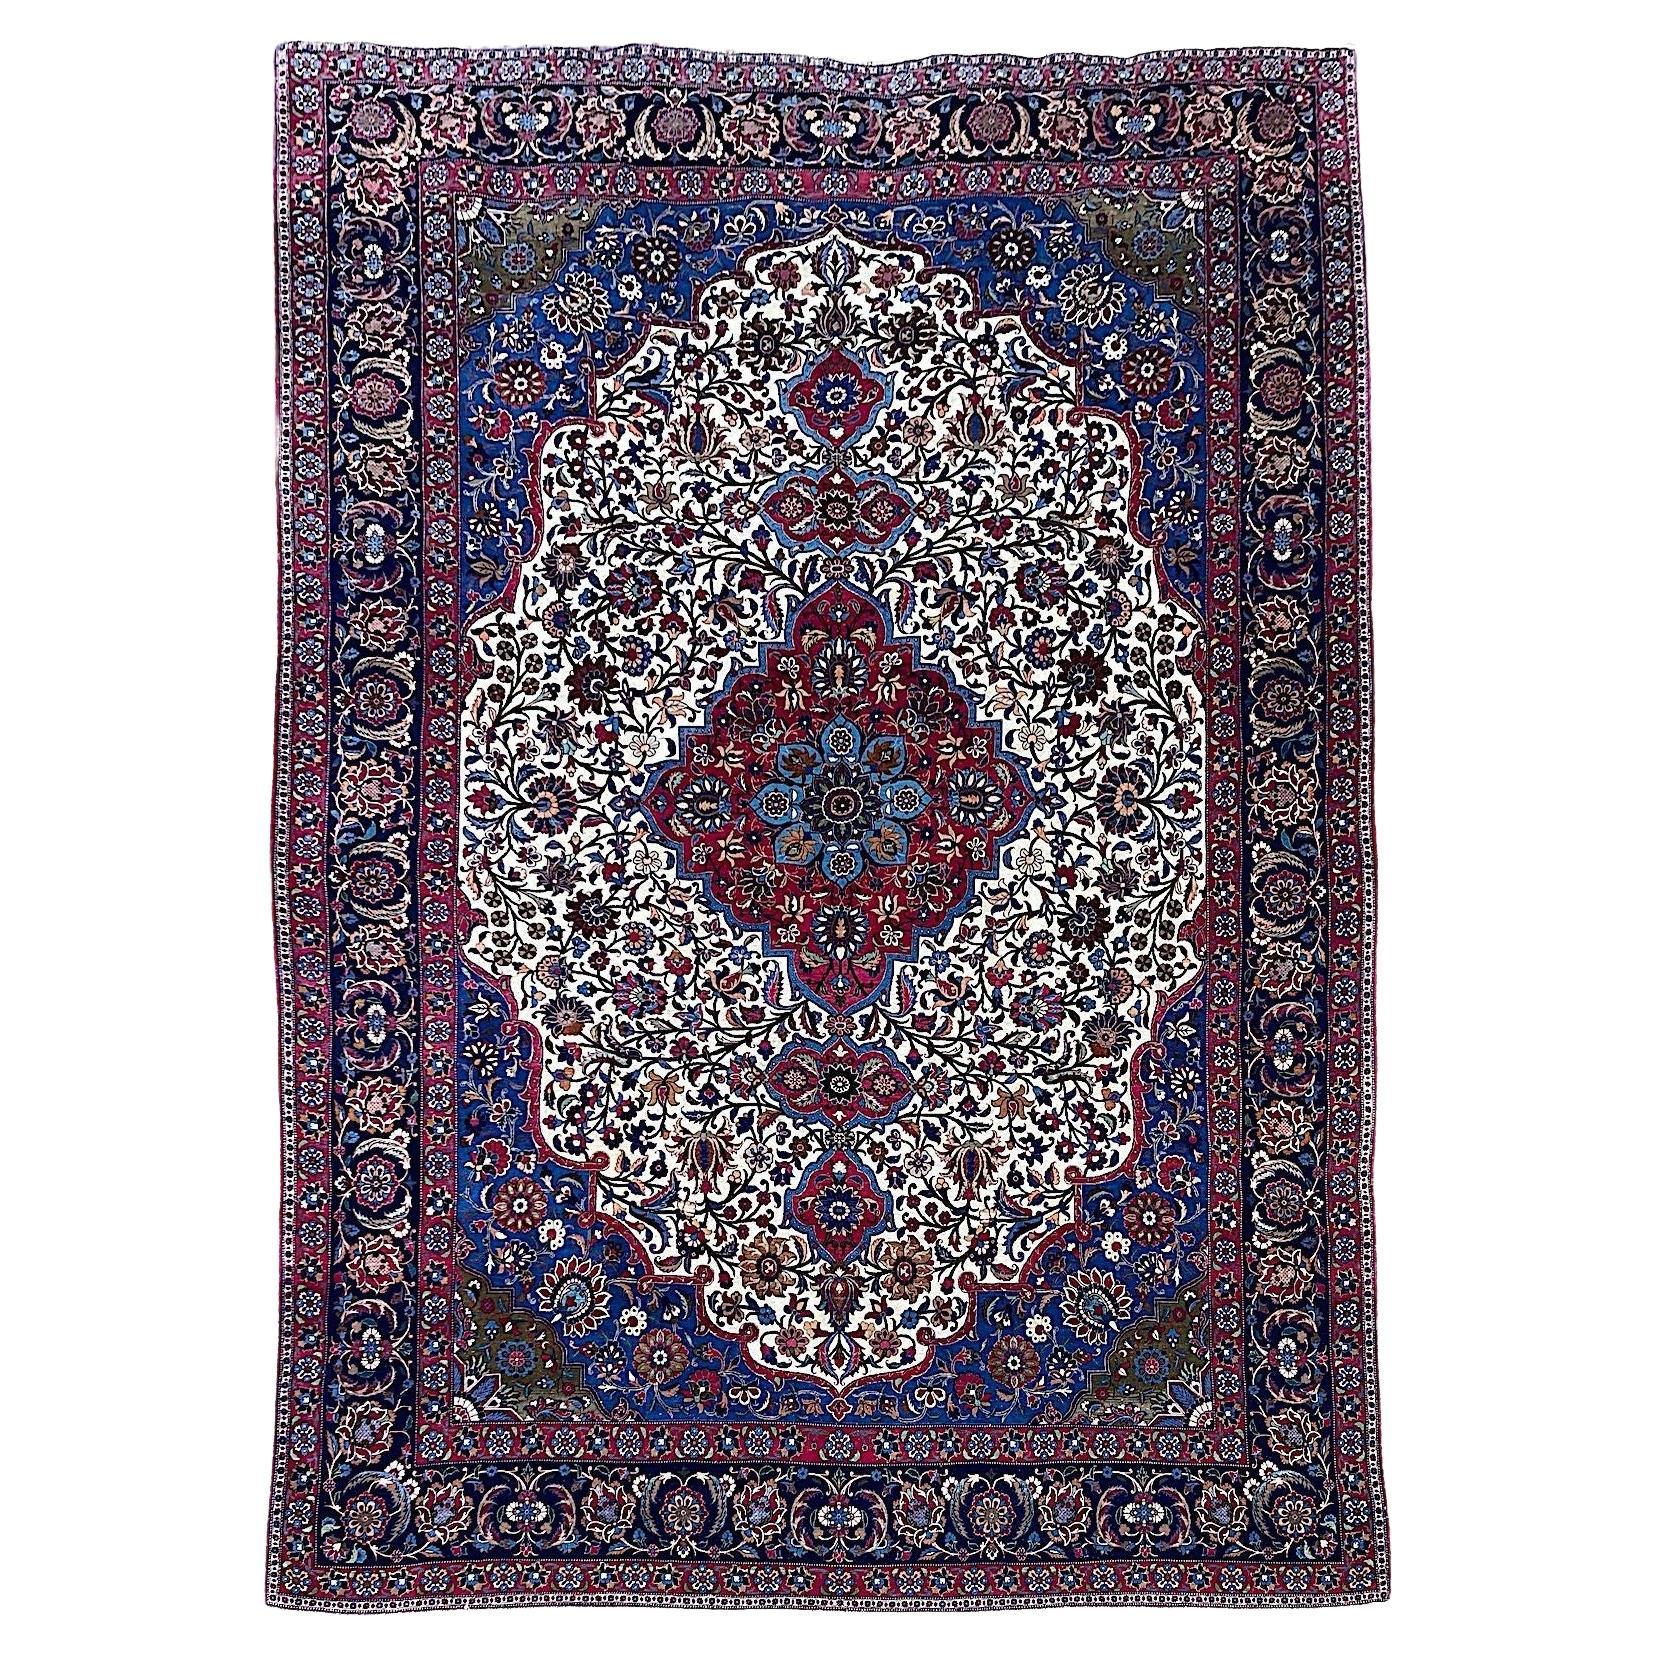 Antique Wool & Silk Isfahan Carpet 3.43m x 2.33m